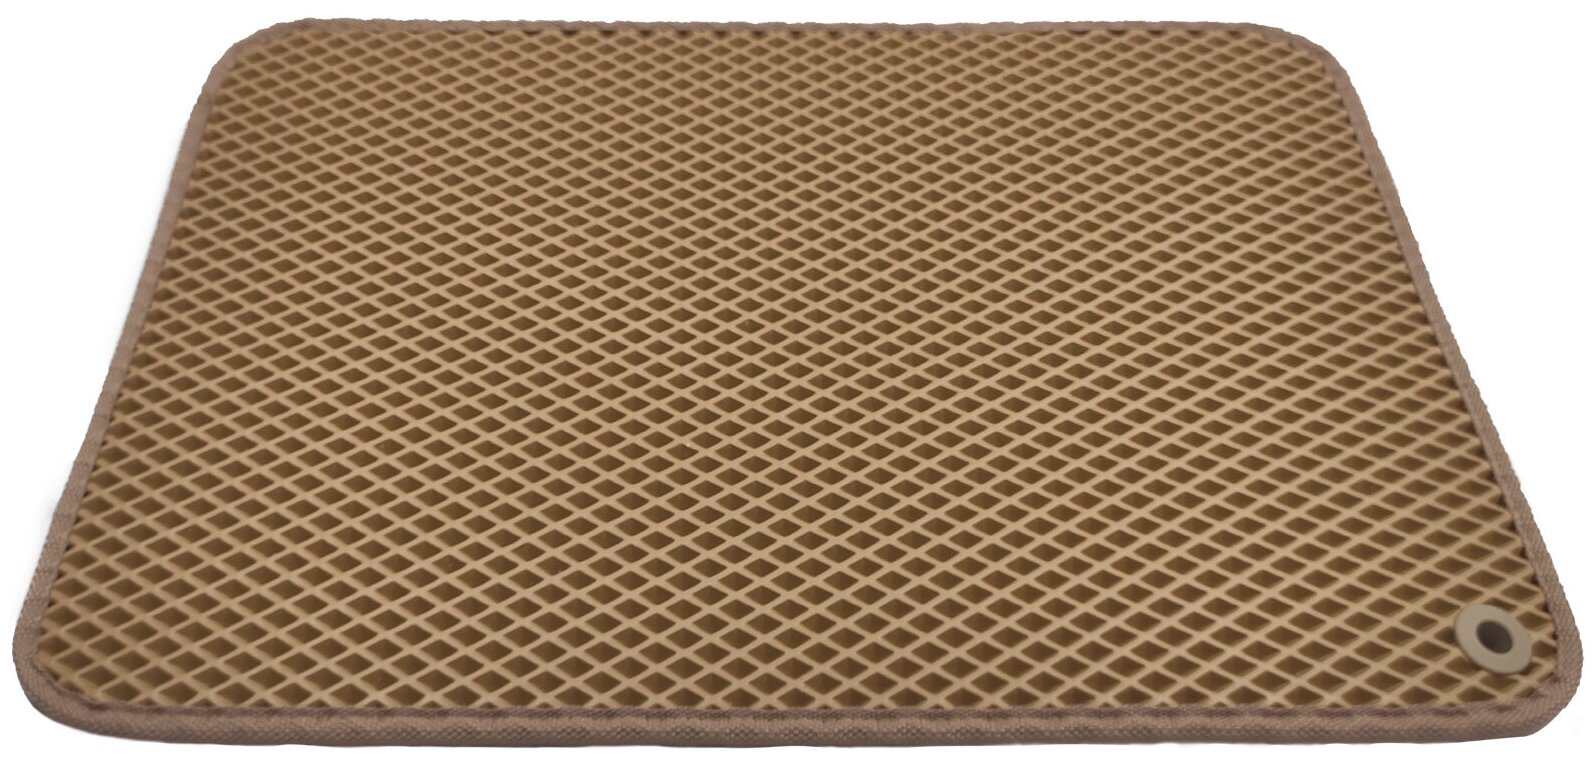 Грязезащитный придверный резиновый коврик в прихожую из EVA для обуви, для ванной, туалета, 0.3 х 0.45 м, бежевый ромб